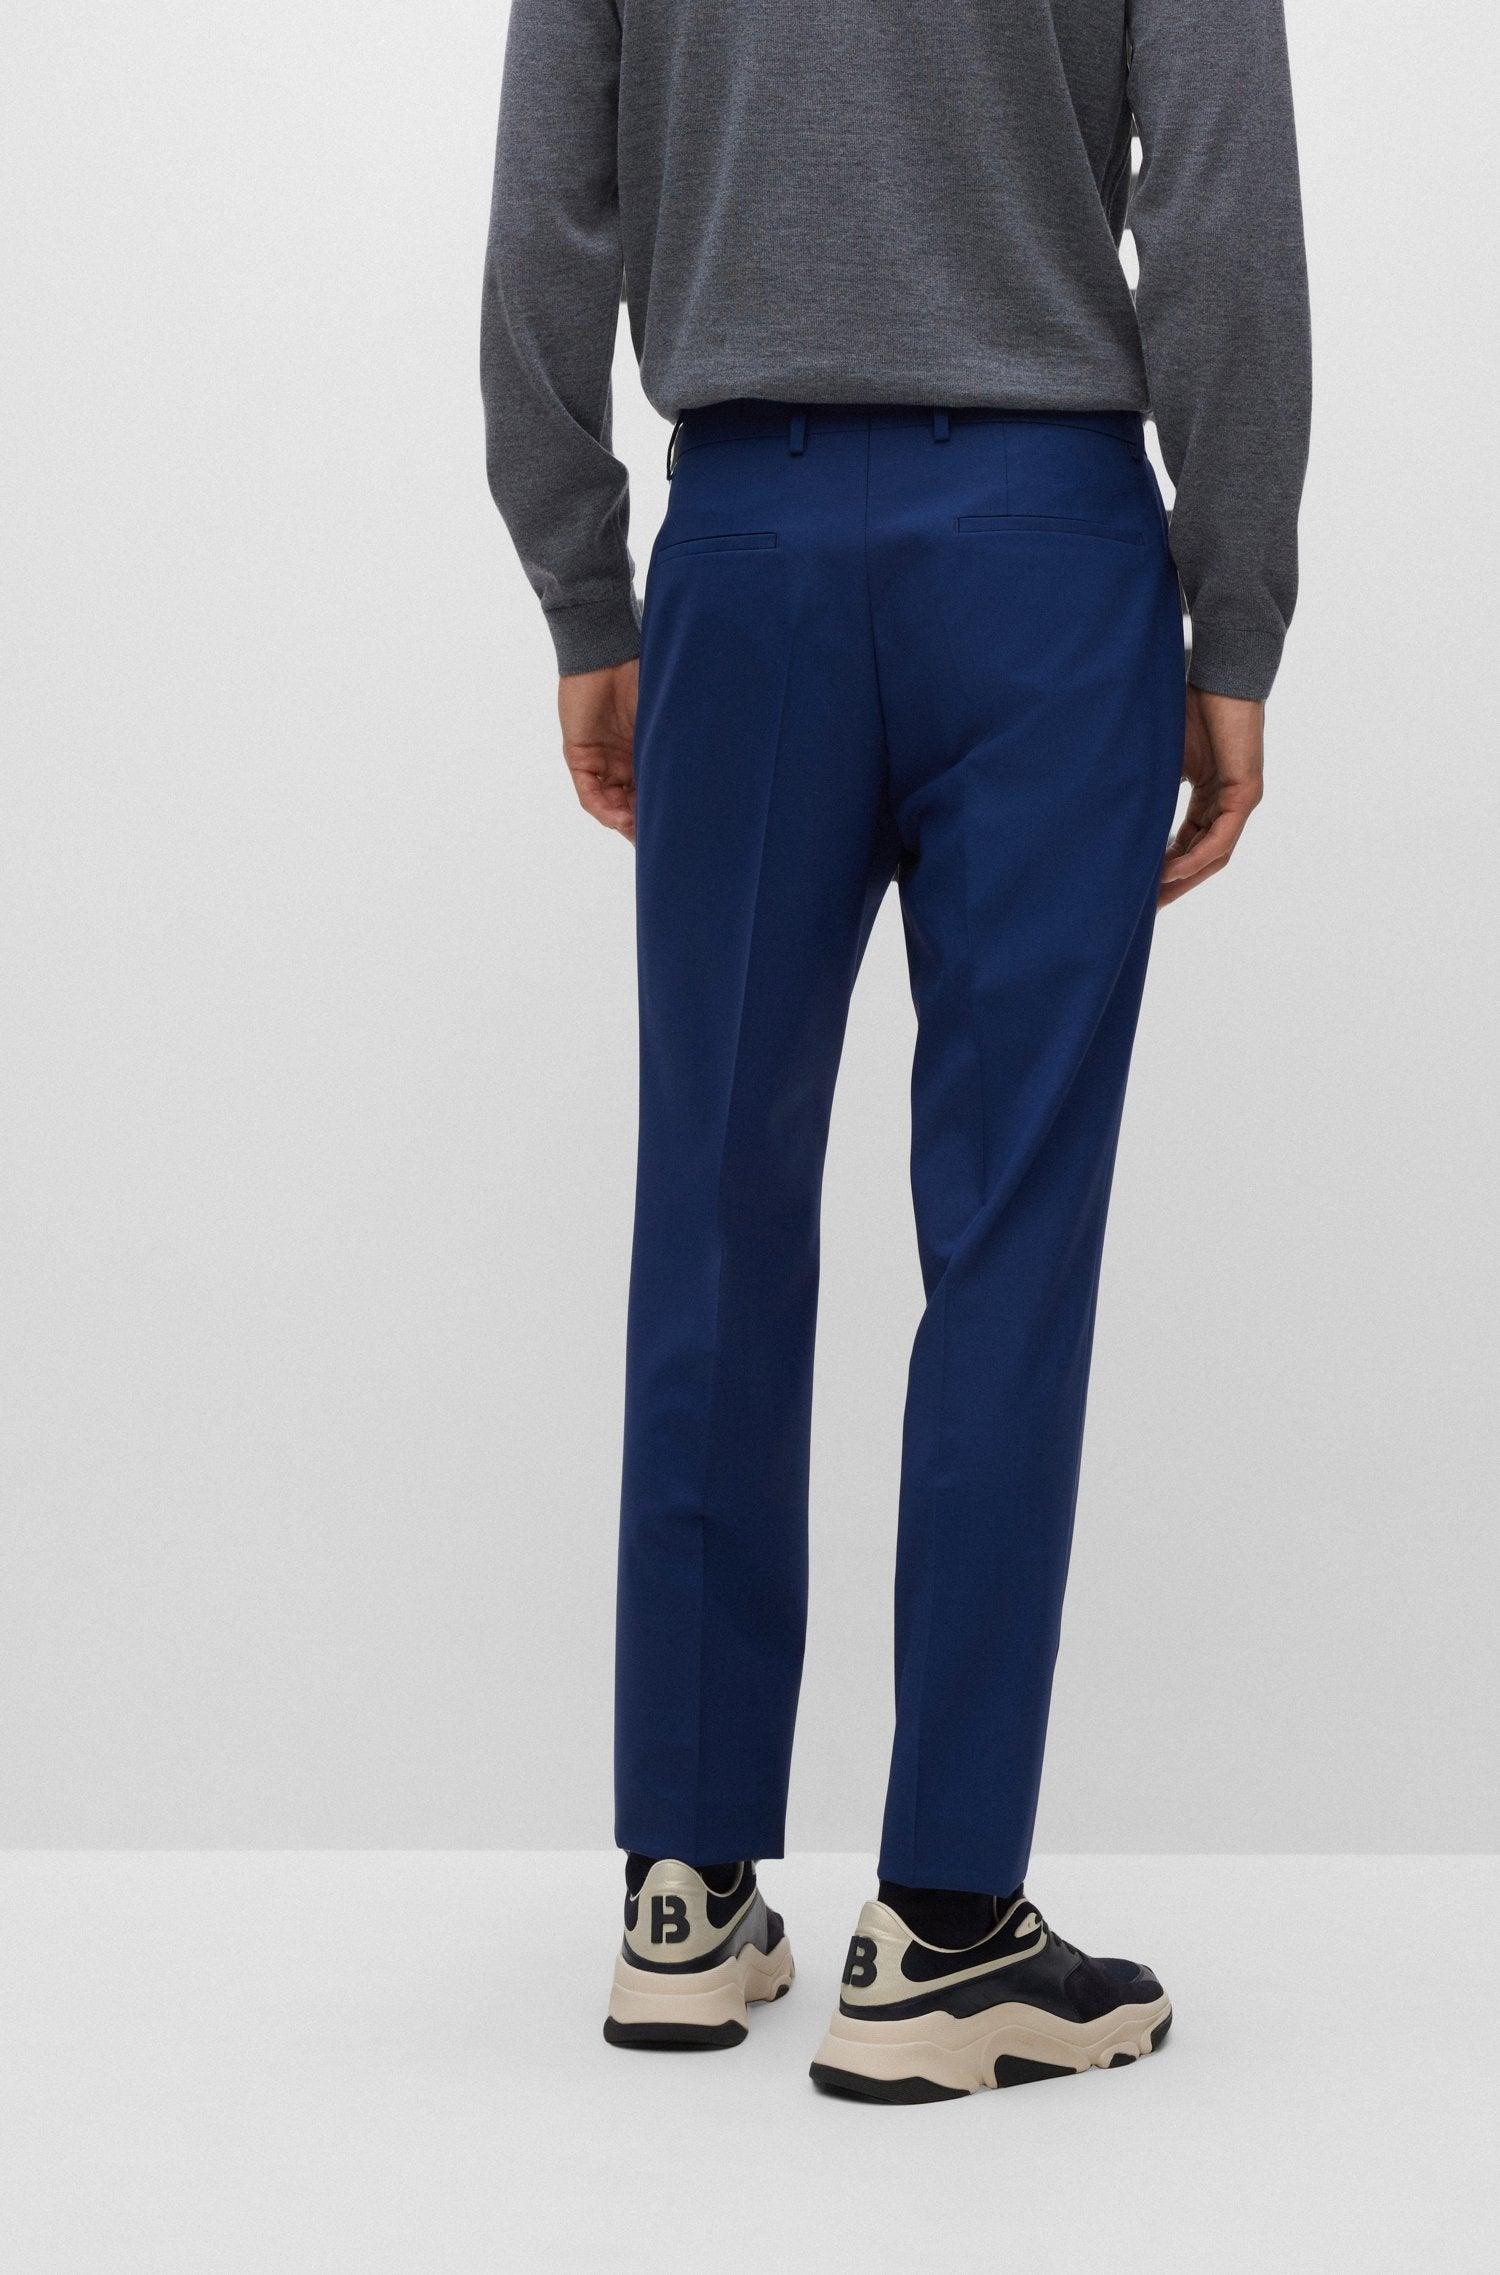 としてご ボス カジュアルパンツ メンズ ボトムス GENIUS - Suit trousers - dark grey one :53